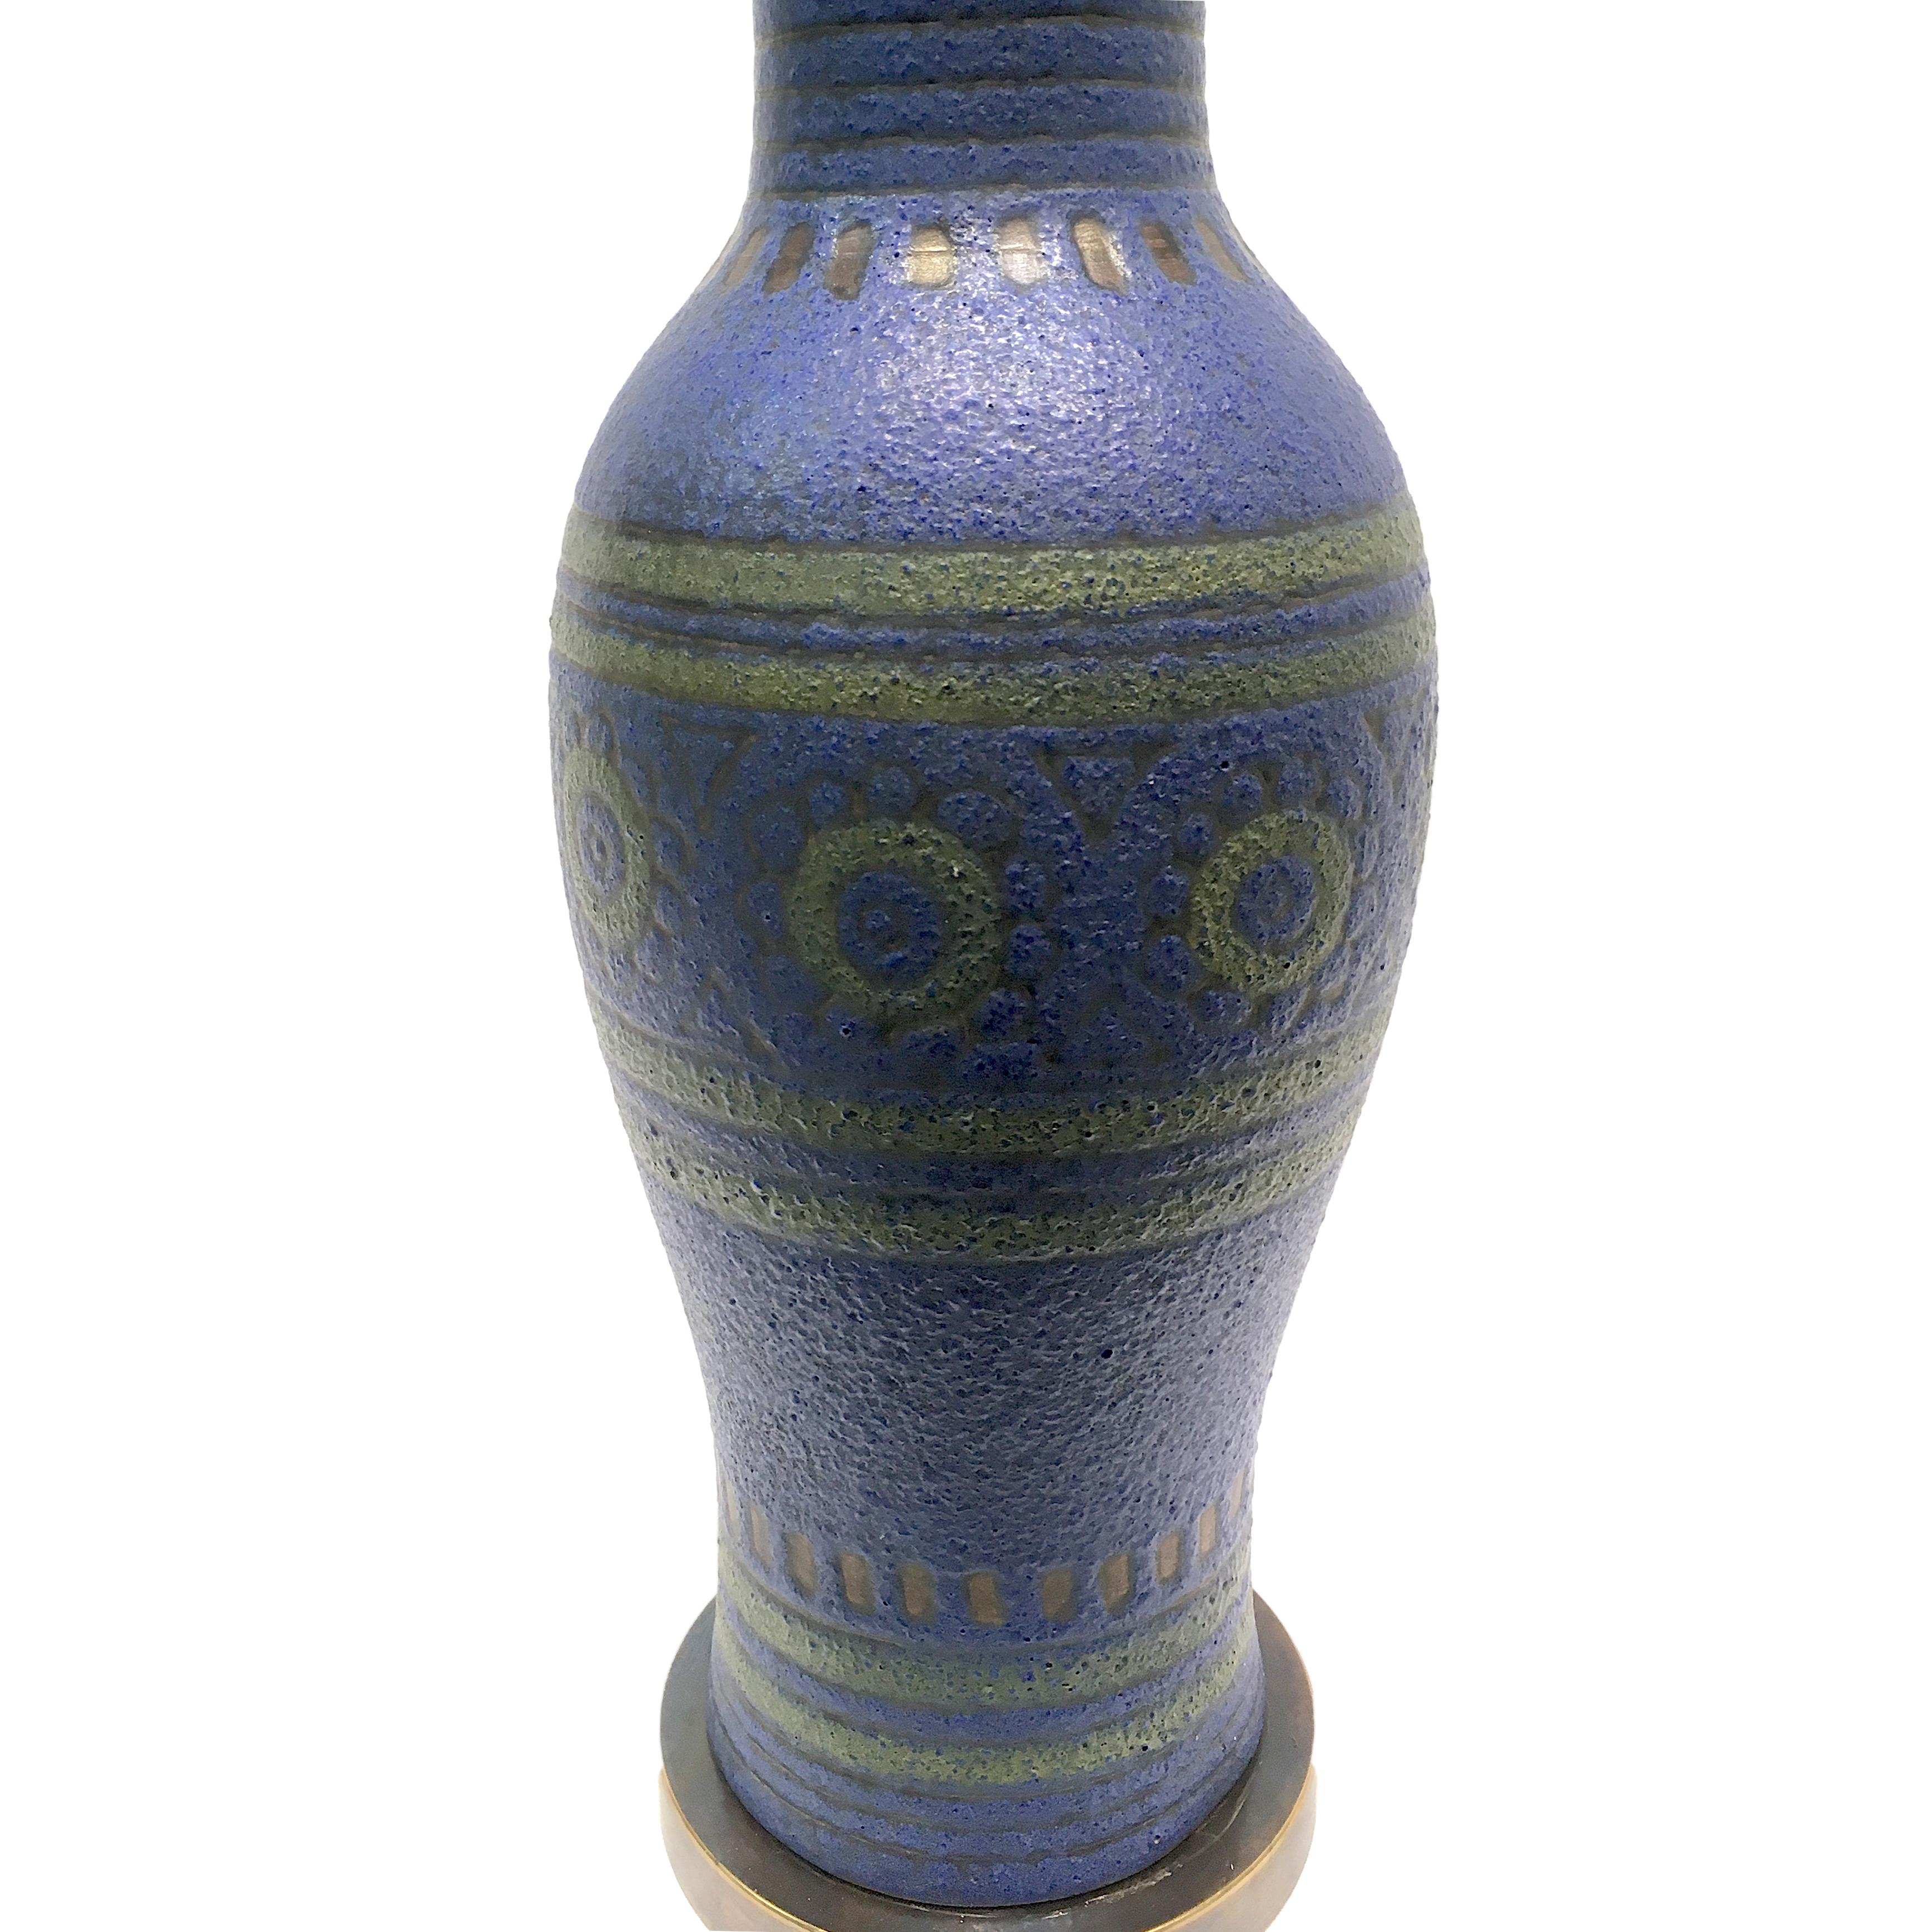 Eine einzelne dänische Keramik-Tischlampe mit geometrischem Dekor aus den 1960er Jahren.

Abmessungen:
Höhe des Körpers 19?
Breite 6,25?